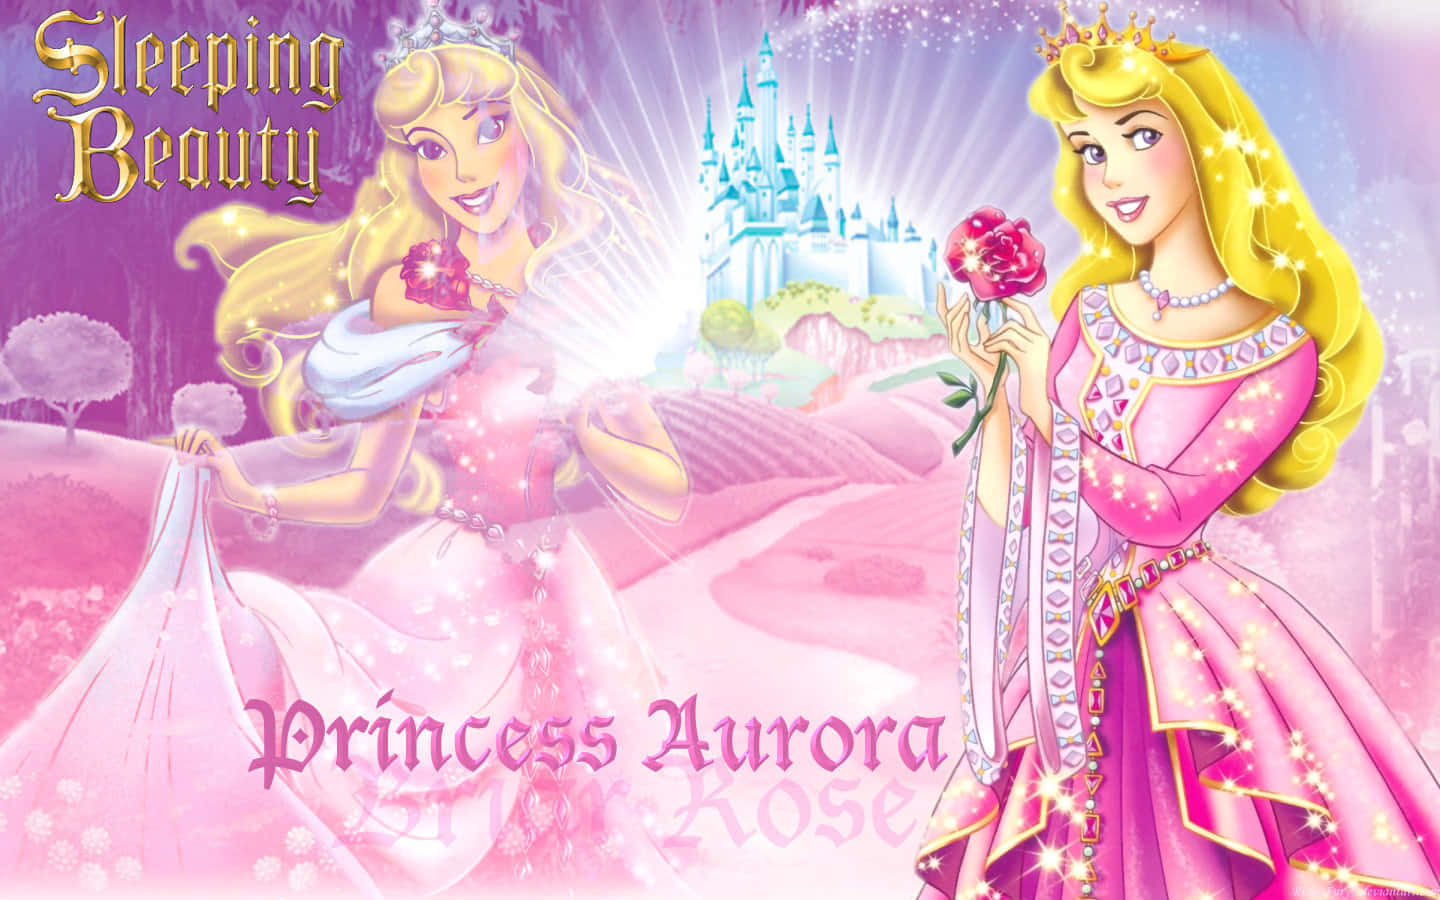 Four beloved Disney Princesses - Jasmine, Rapunzel, Cinderella, and Belle